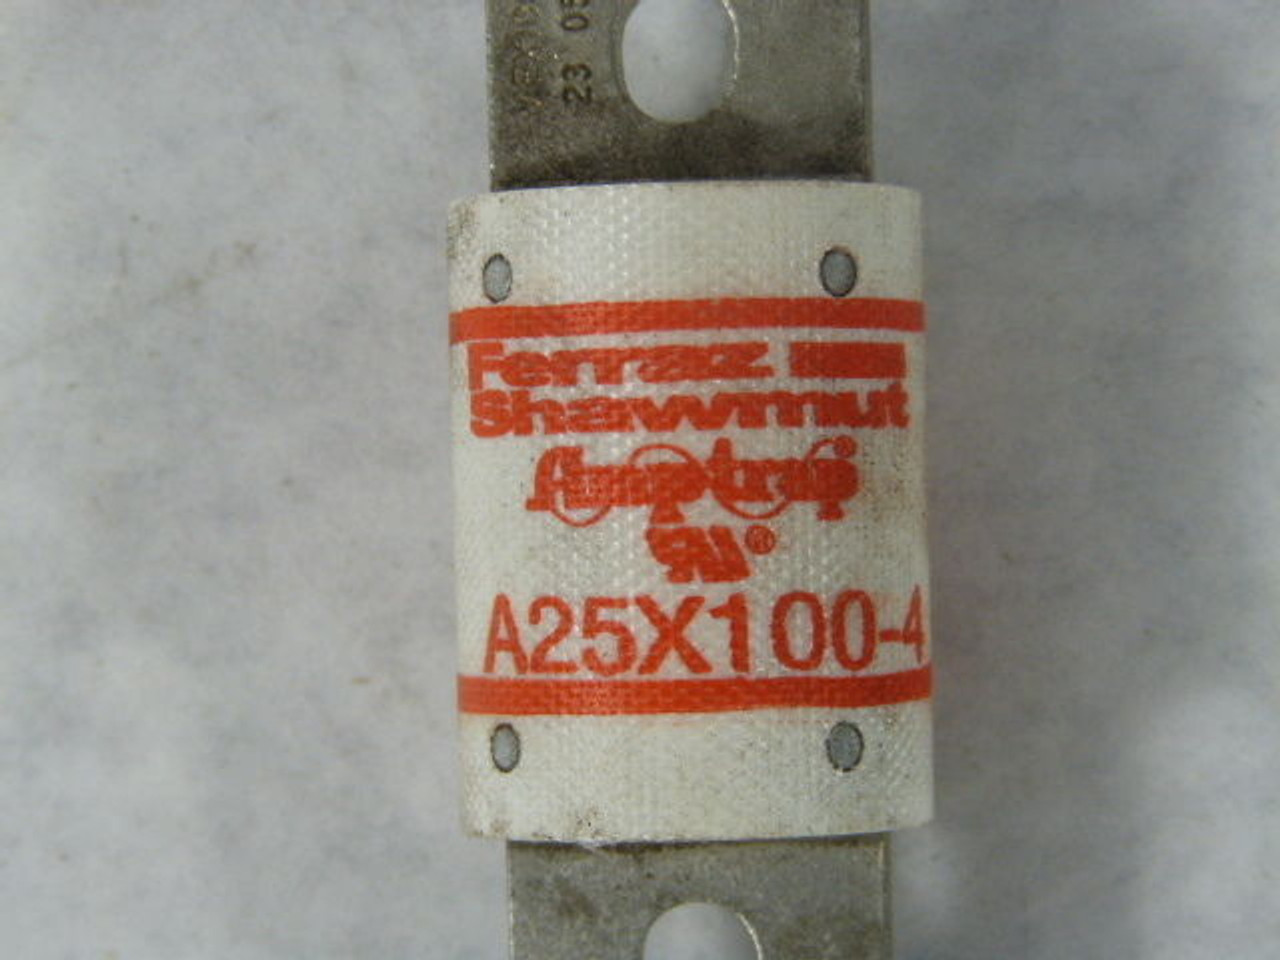 Ferraz Shawmut A25X100-4 Semi Conductor Fuse 100A 250V USED